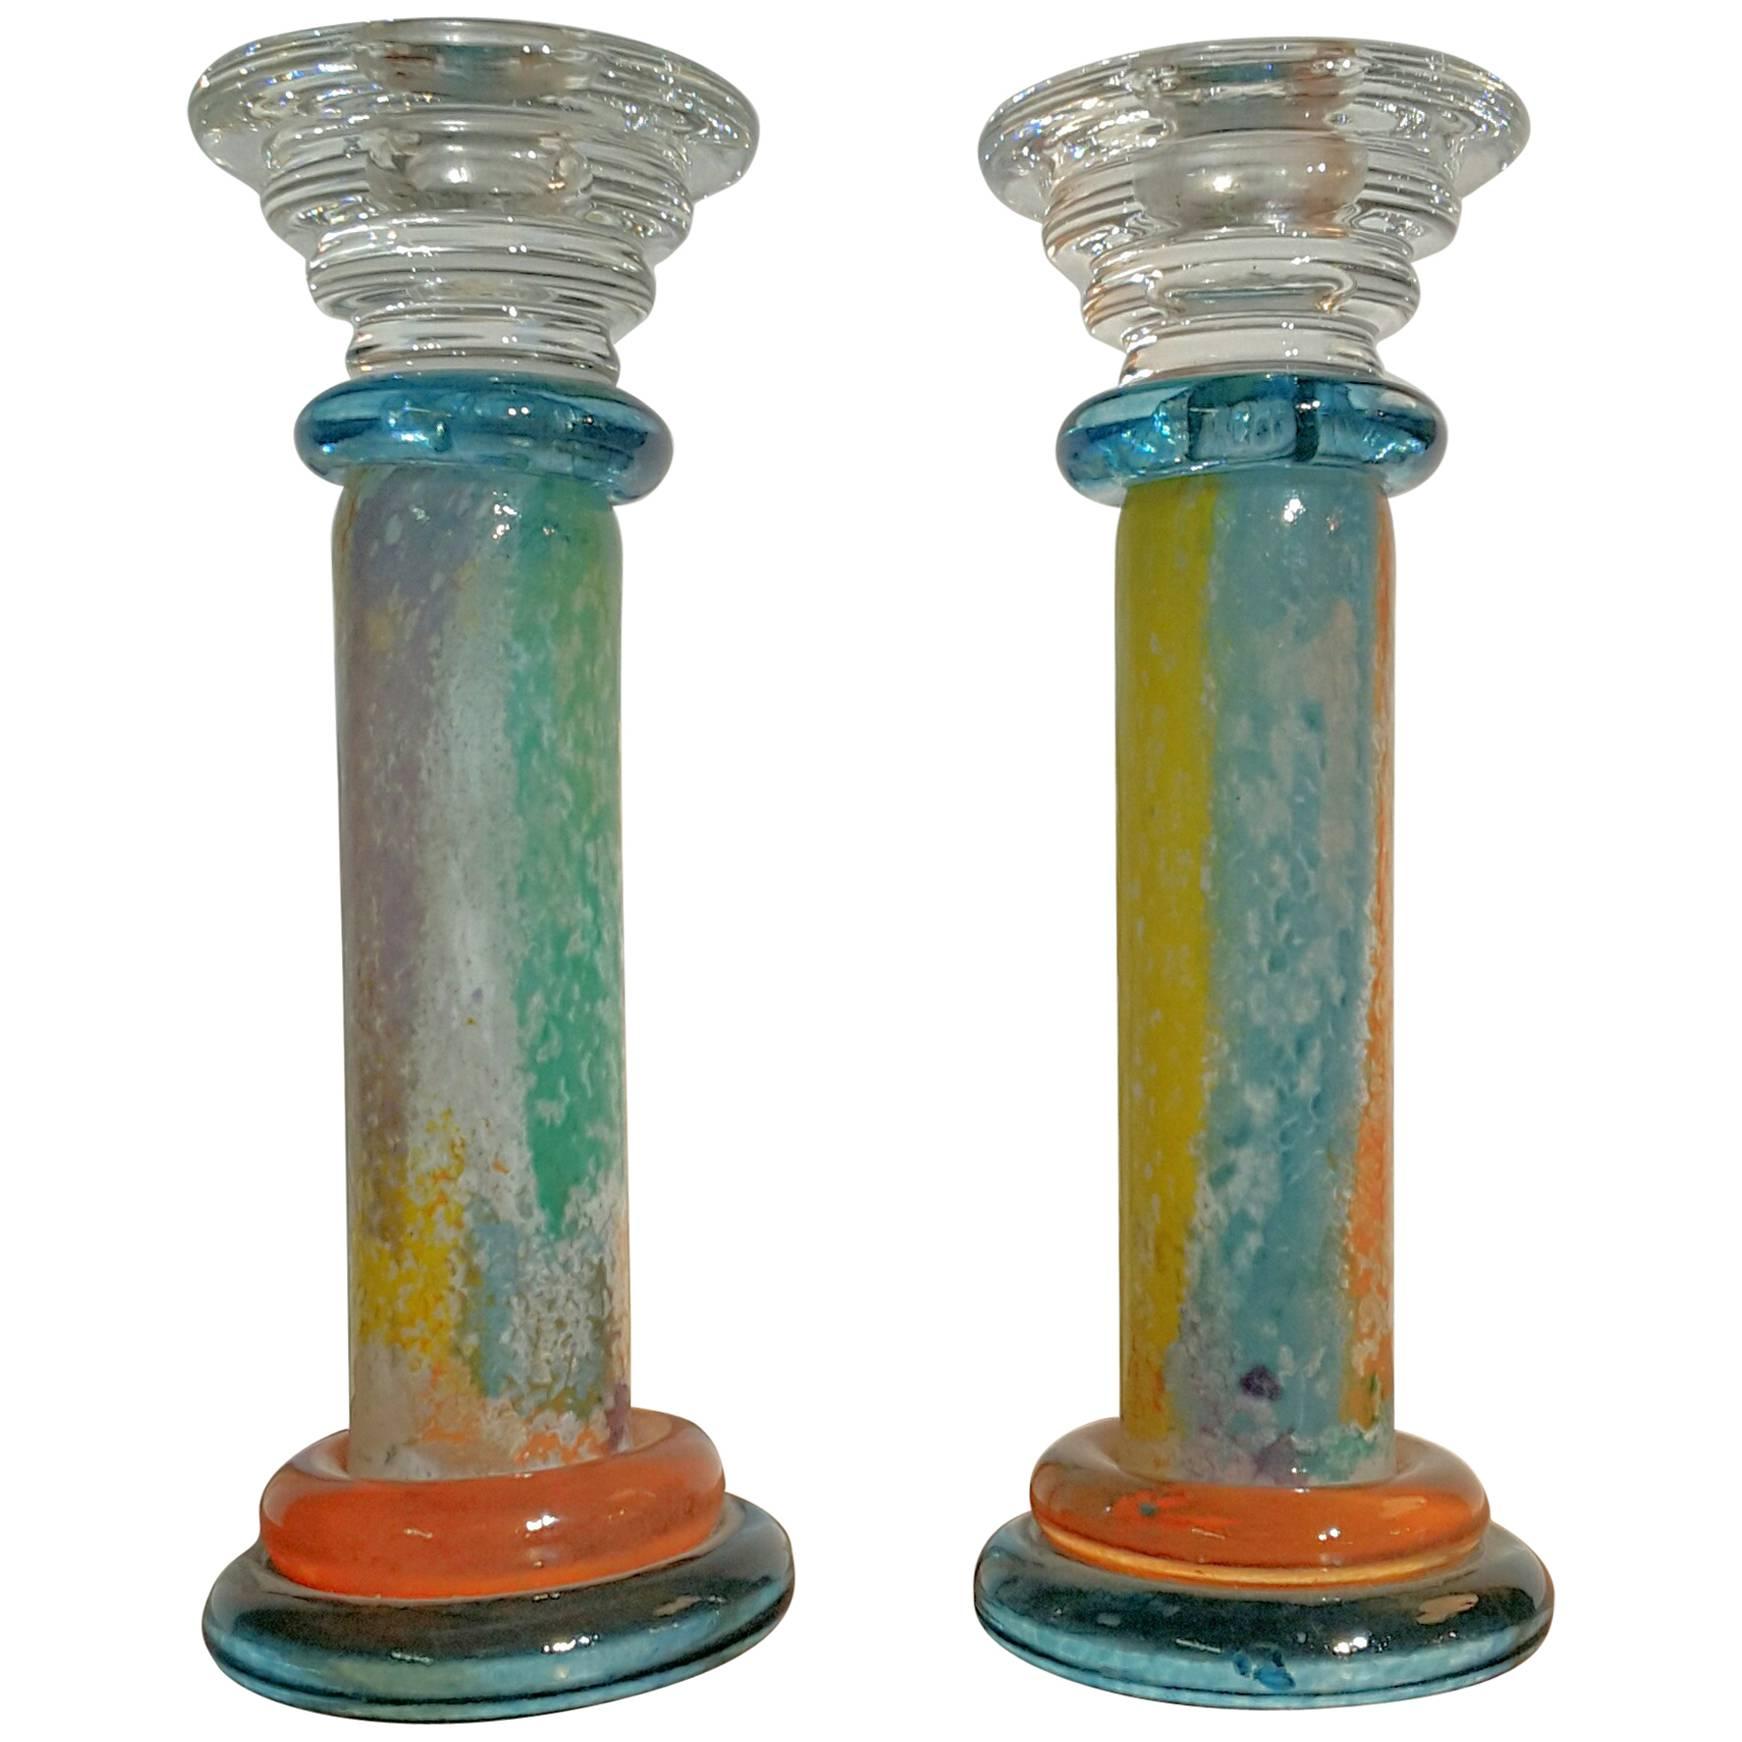 Pair of Kosta Boda Multicolored Candlestick Holders Designed by Kjell Engman